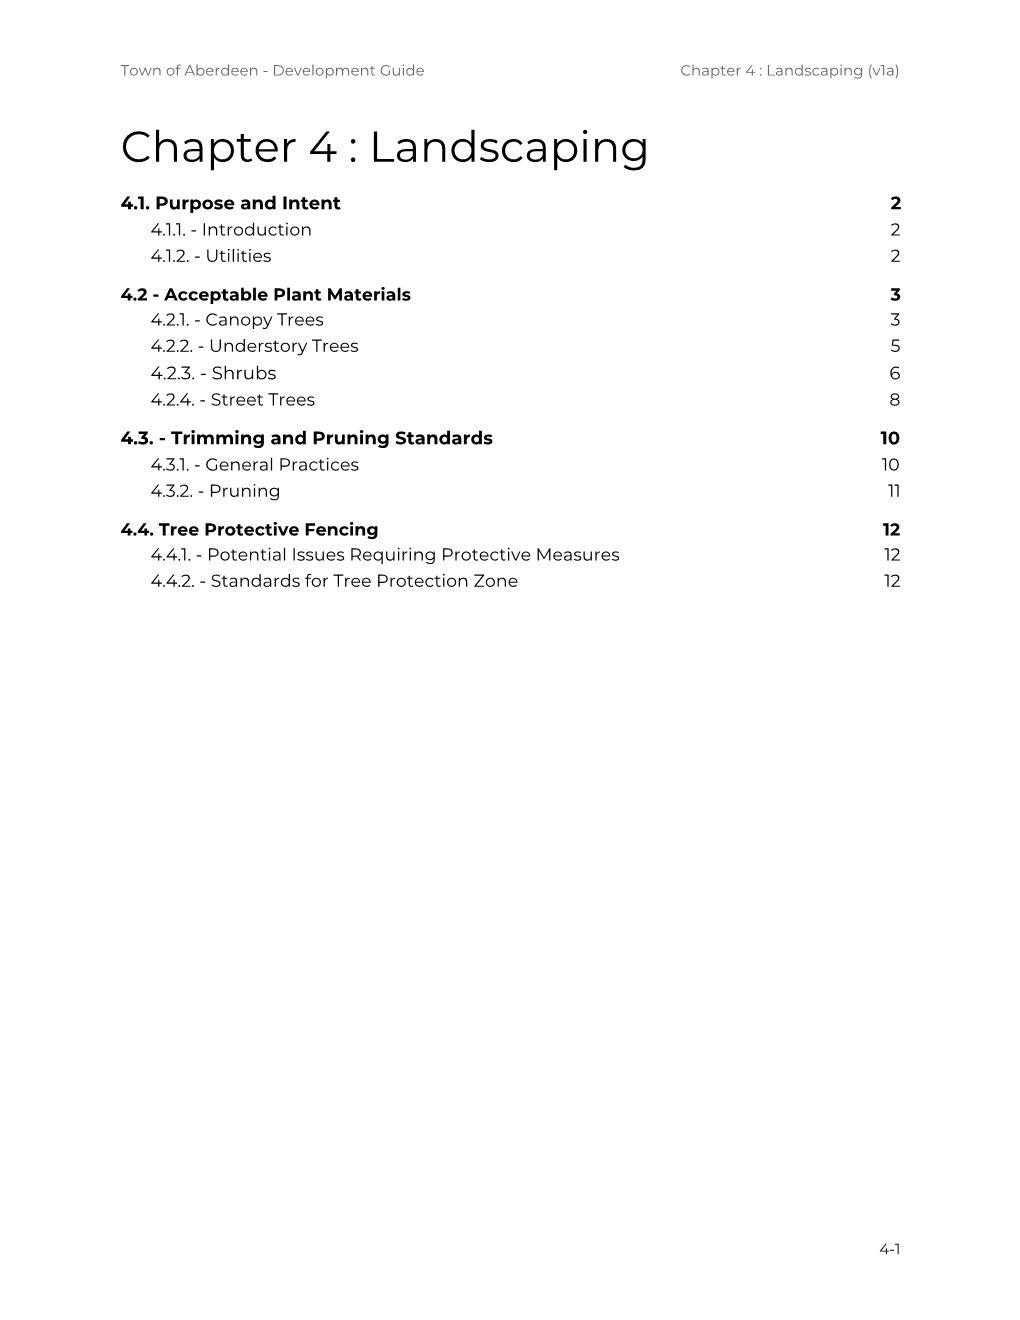 Landscaping (V1a)